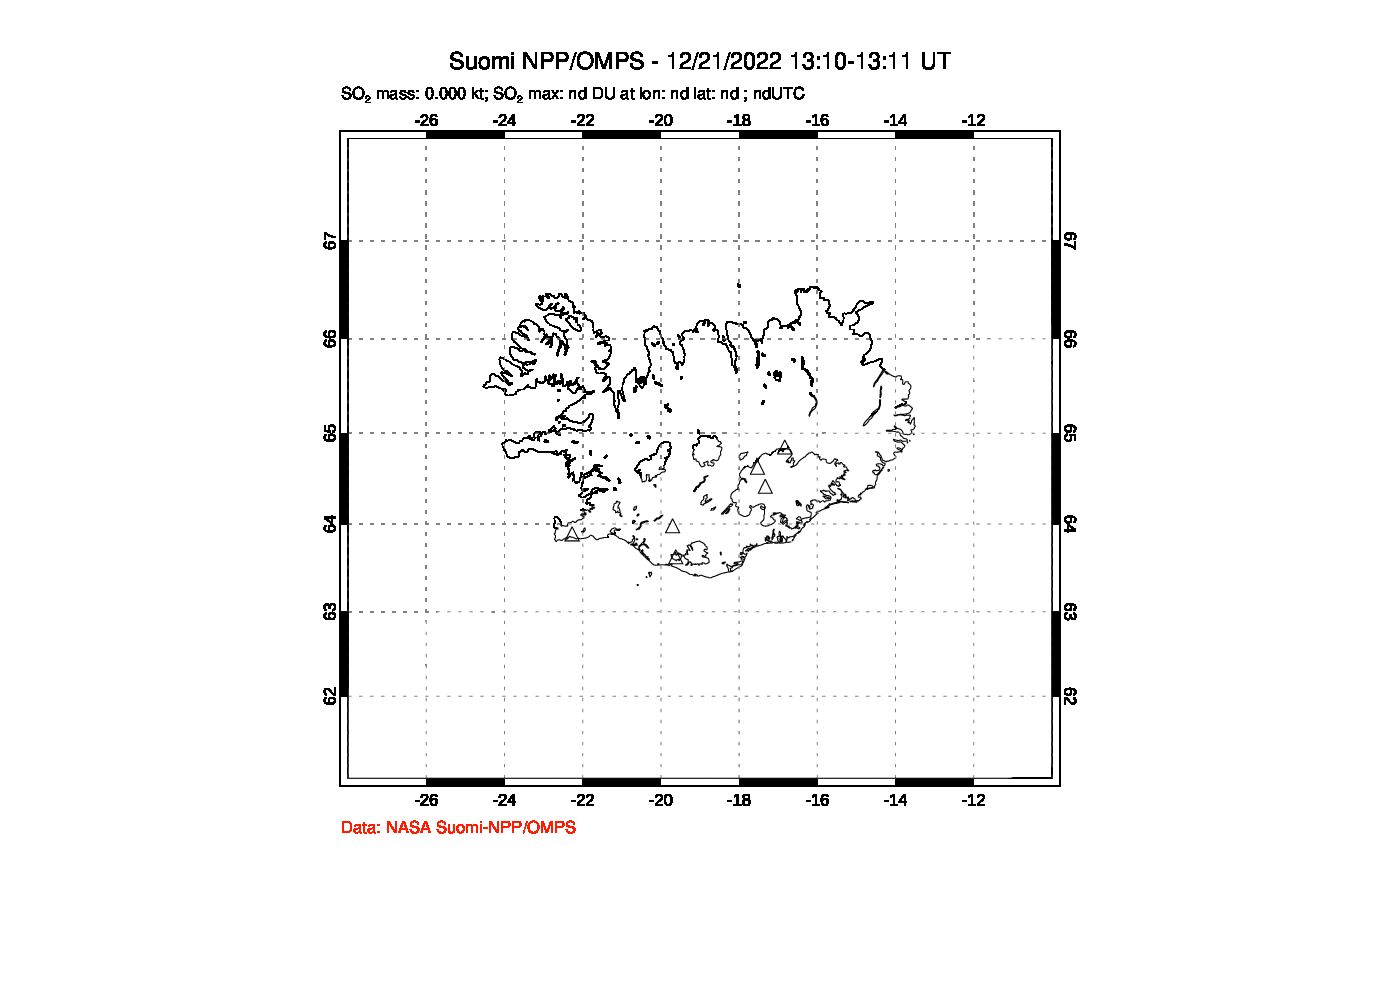 A sulfur dioxide image over Iceland on Dec 21, 2022.